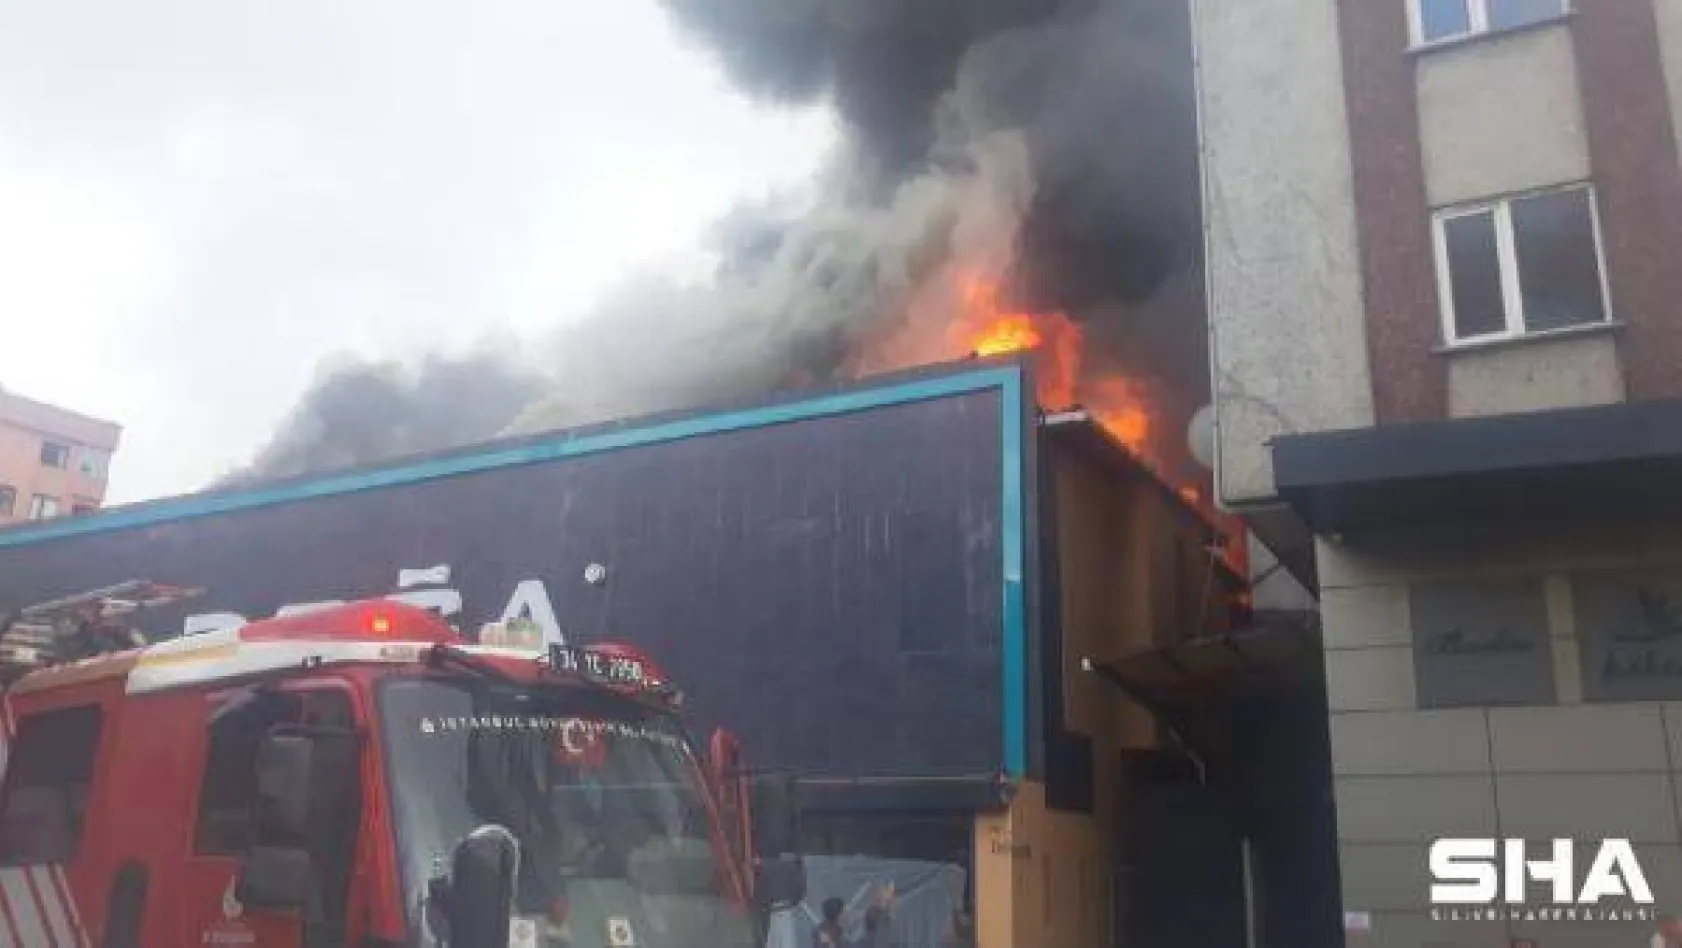 Ataşehir'de mobilya fabrikasında yangın